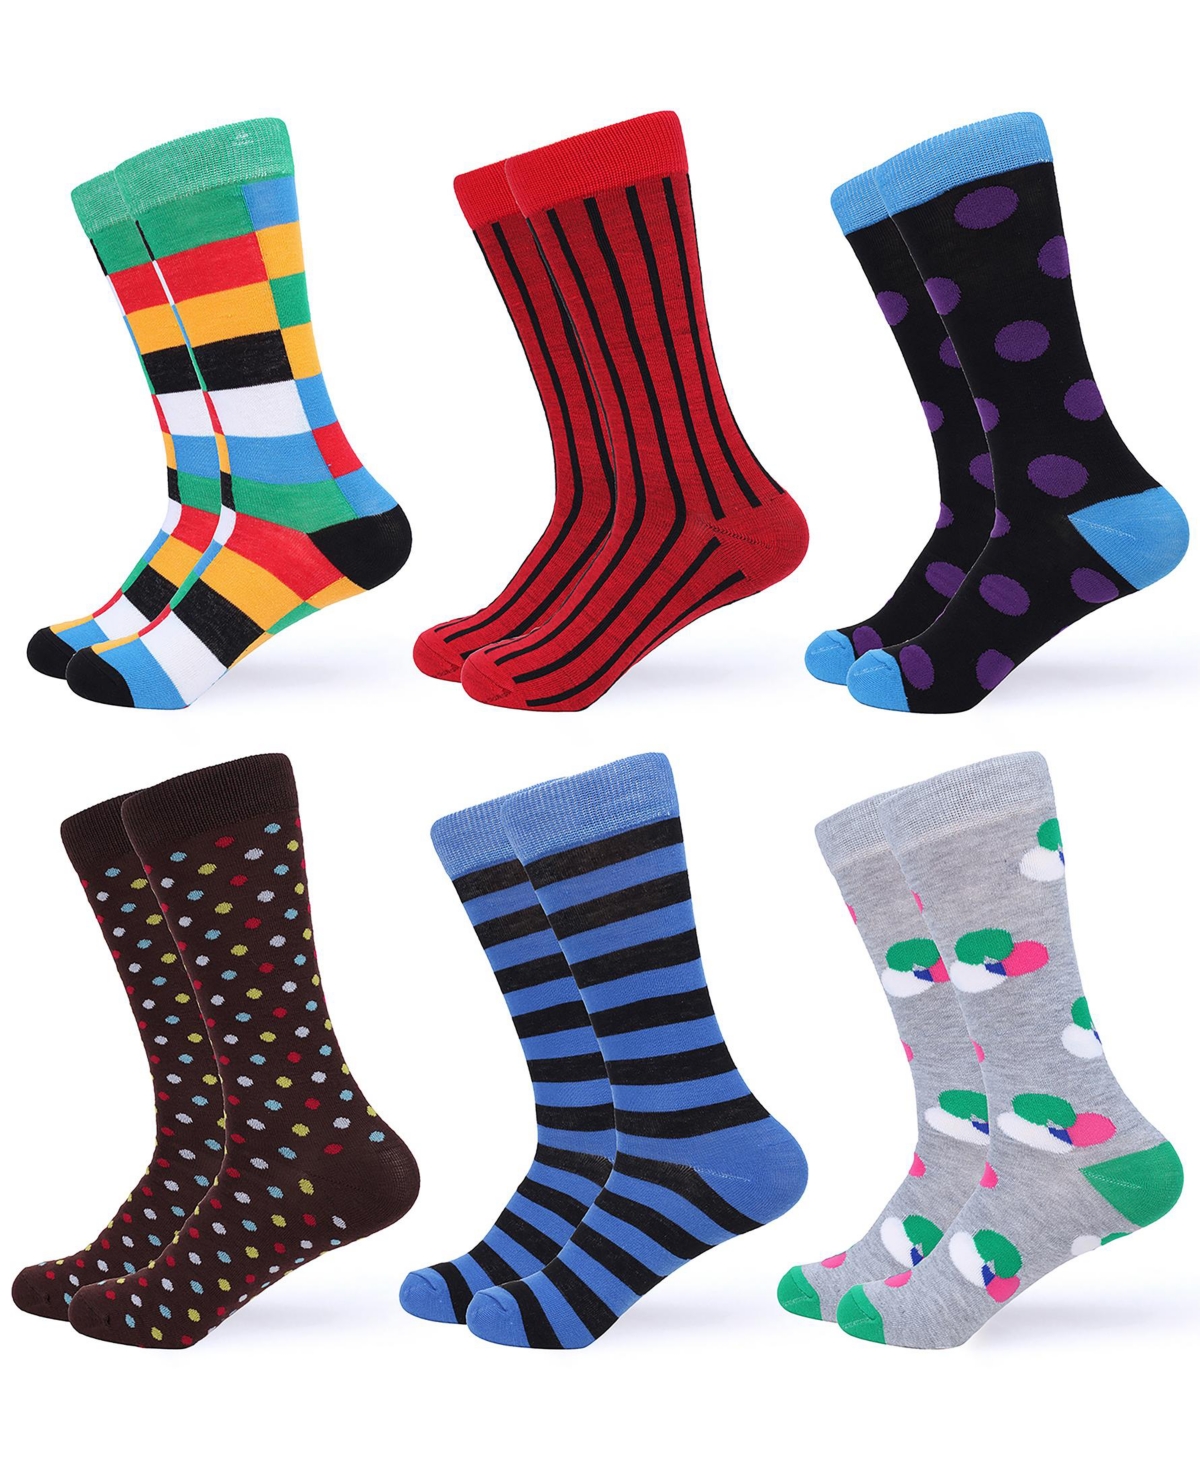 Men's Fun Colorful Dress Socks 6 Pack - Funky colors